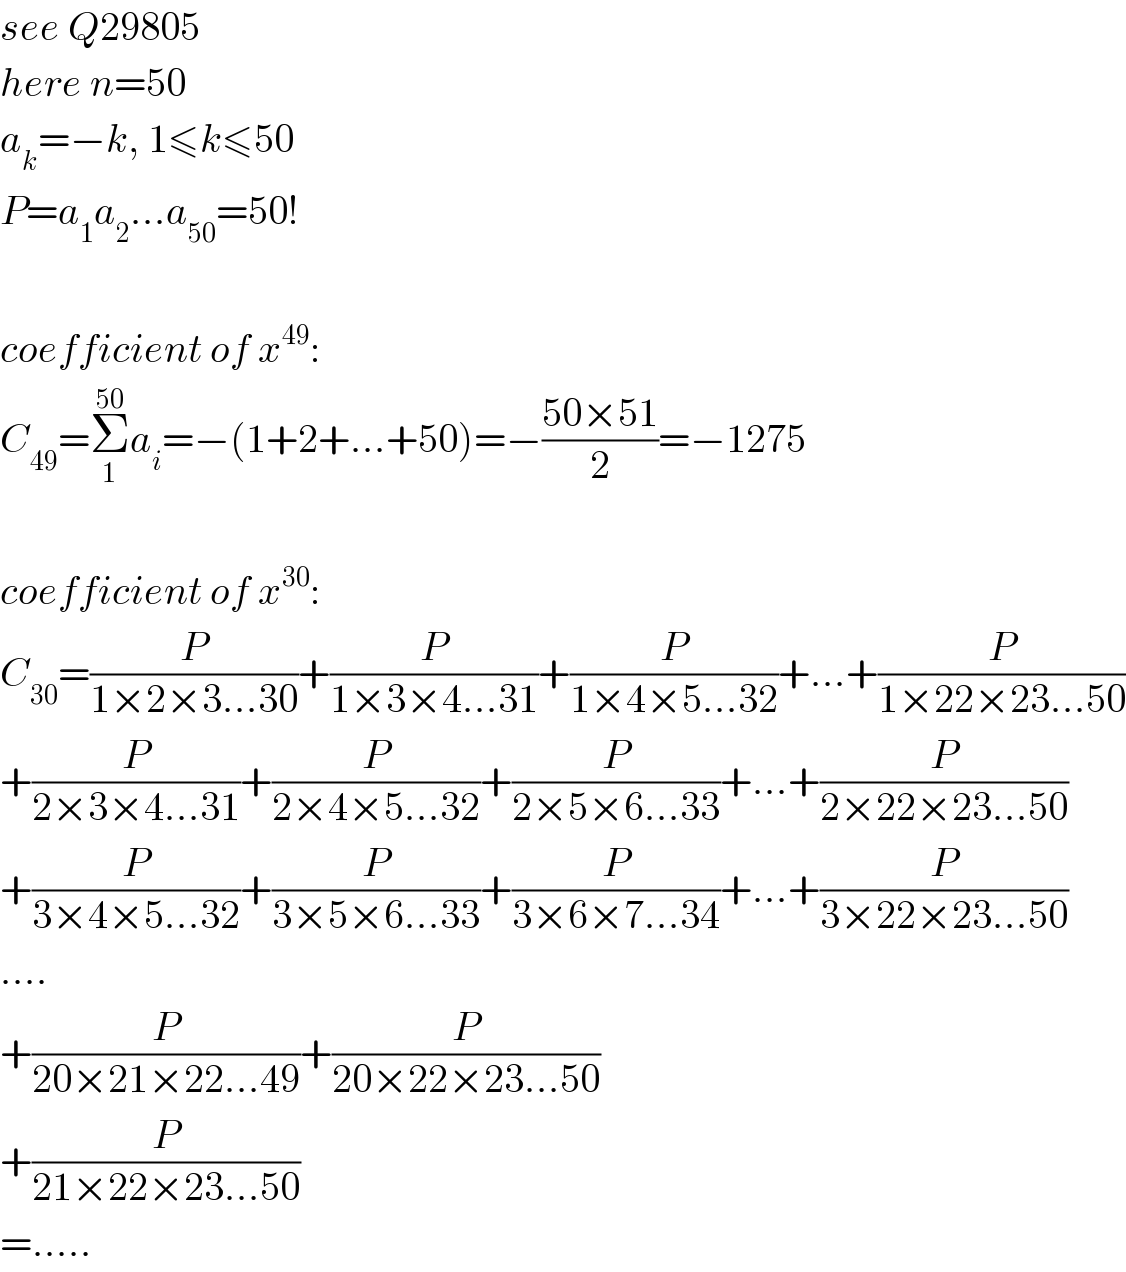 see Q29805  here n=50  a_k =−k, 1≤k≤50  P=a_1 a_2 ...a_(50) =50!    coefficient of x^(49) :  C_(49) =Σ_1 ^(50) a_i =−(1+2+...+50)=−((50×51)/2)=−1275    coefficient of x^(30) :  C_(30) =(P/(1×2×3...30))+(P/(1×3×4...31))+(P/(1×4×5...32))+...+(P/(1×22×23...50))  +(P/(2×3×4...31))+(P/(2×4×5...32))+(P/(2×5×6...33))+...+(P/(2×22×23...50))  +(P/(3×4×5...32))+(P/(3×5×6...33))+(P/(3×6×7...34))+...+(P/(3×22×23...50))  ....  +(P/(20×21×22...49))+(P/(20×22×23...50))  +(P/(21×22×23...50))  =.....  